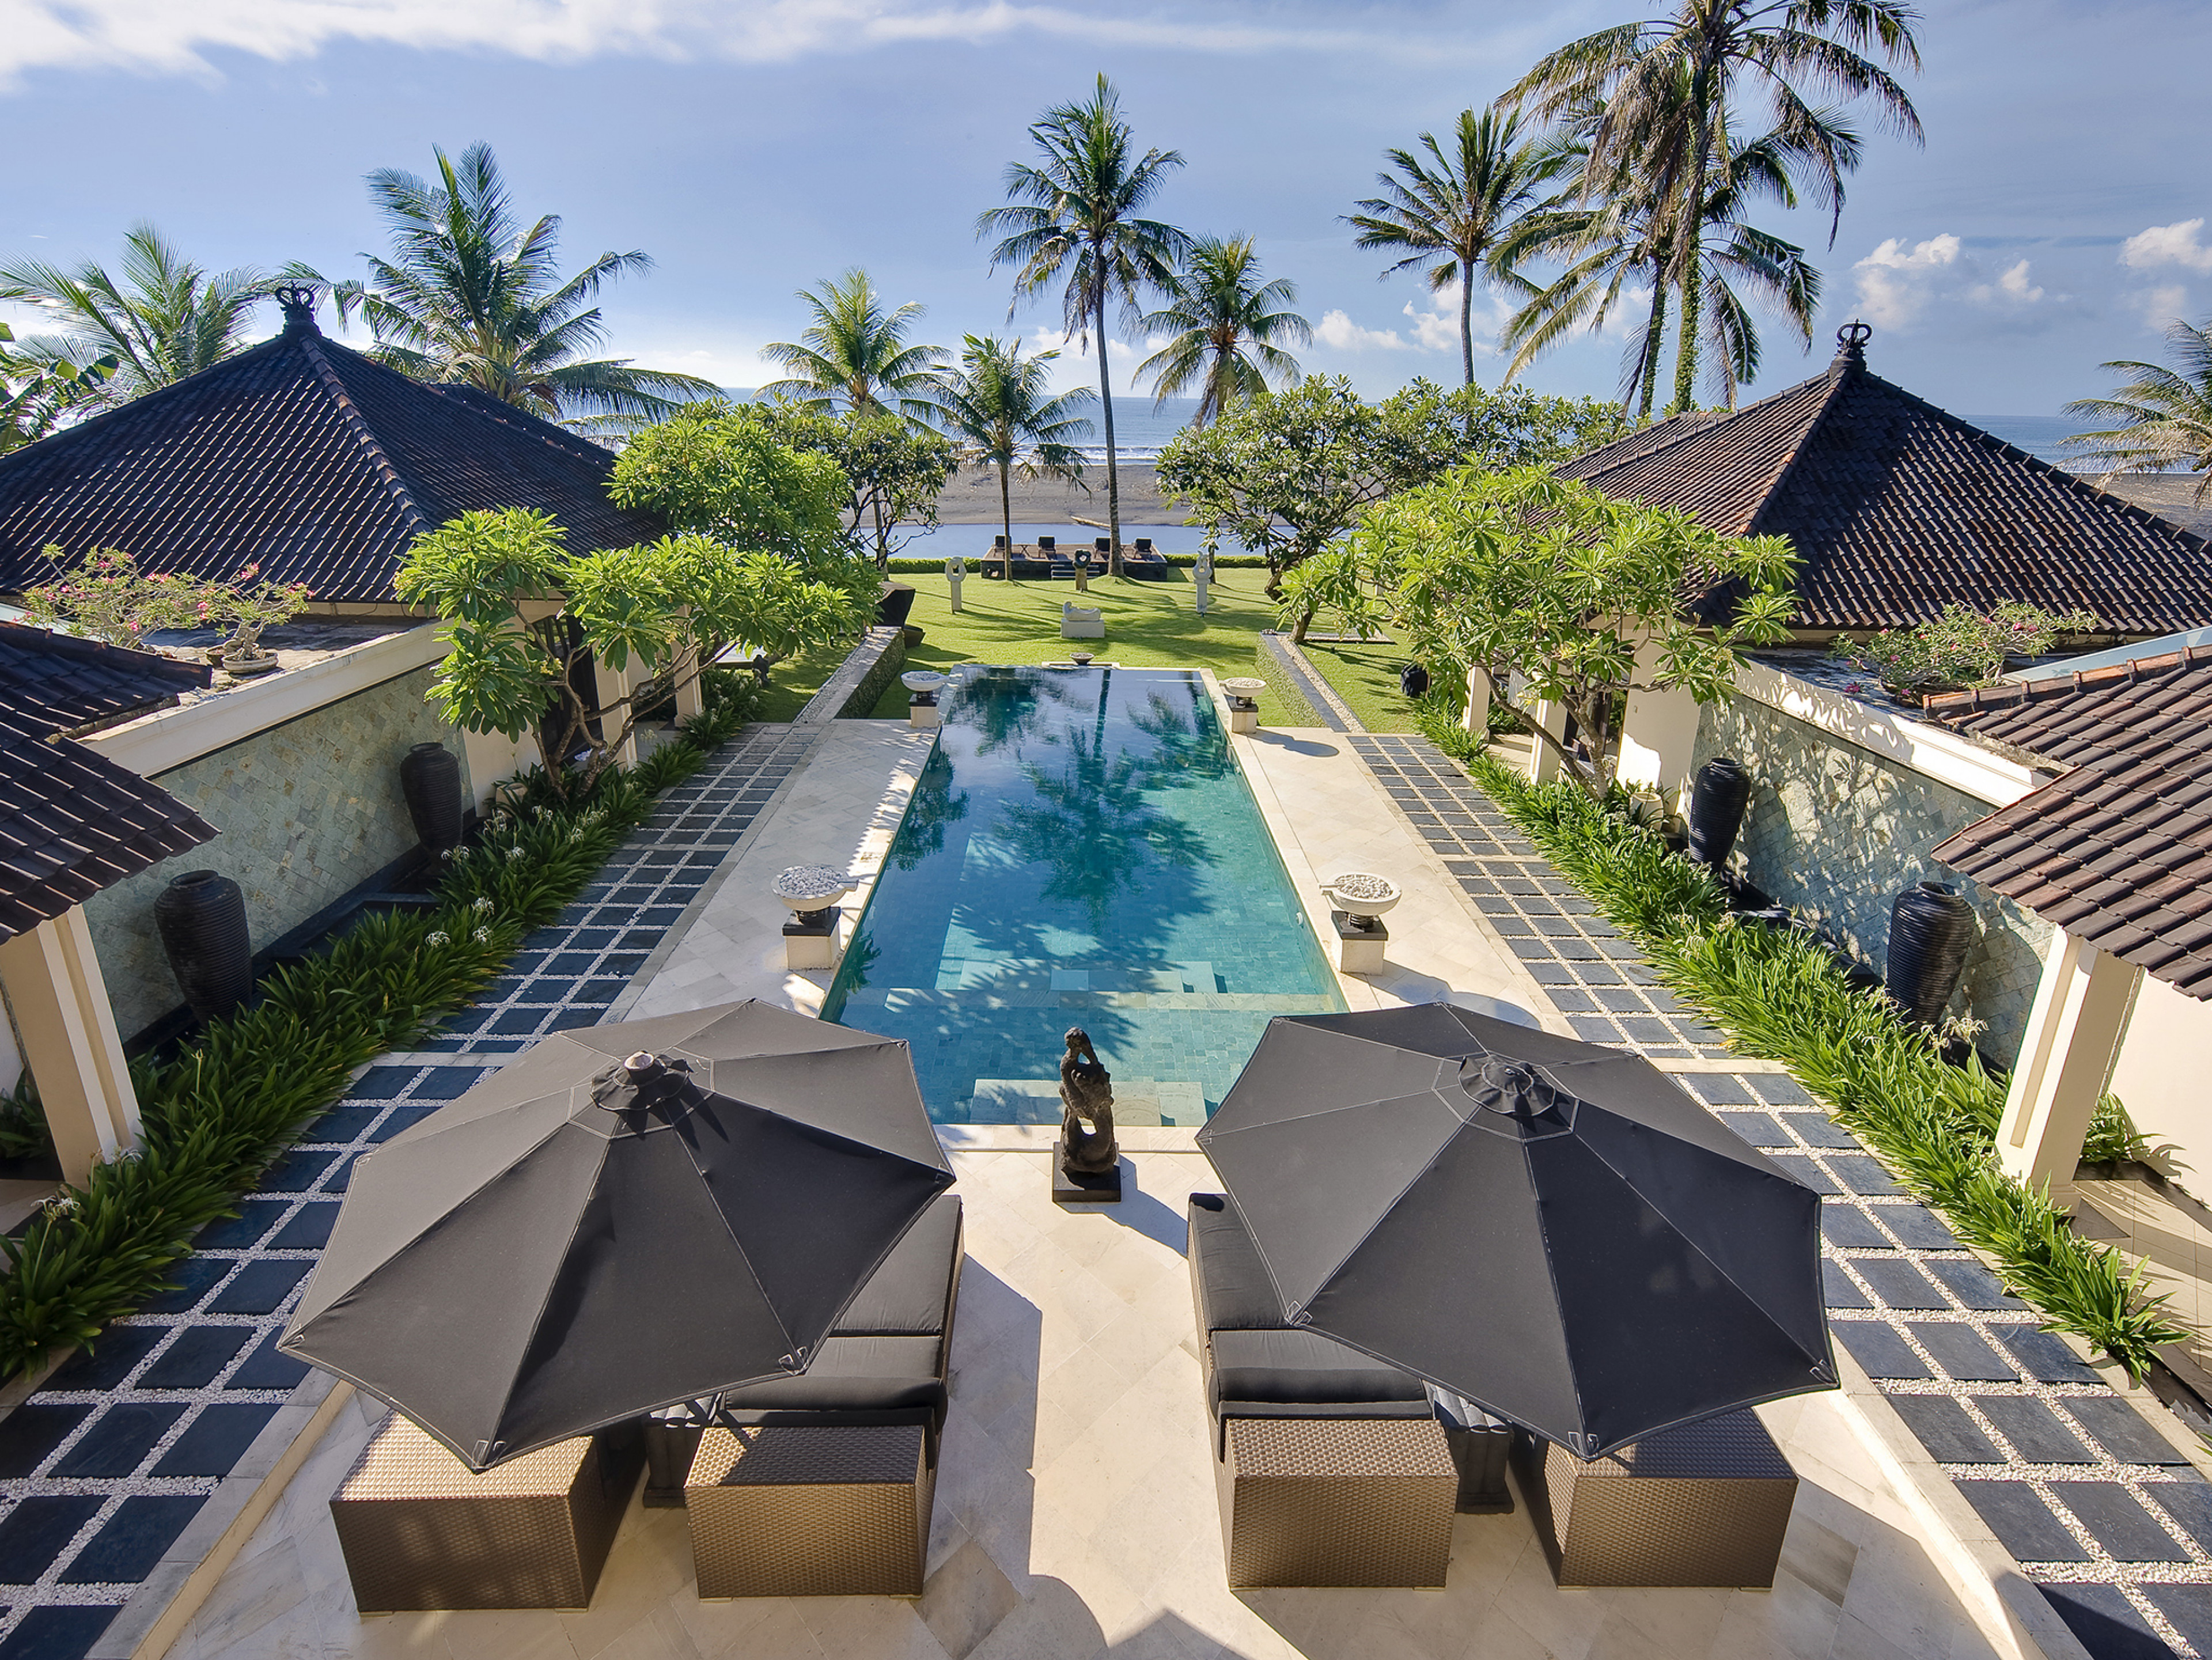 Sanur Ketewel 6692 - The Ylang Ylang - Seaside villas in Indonesia